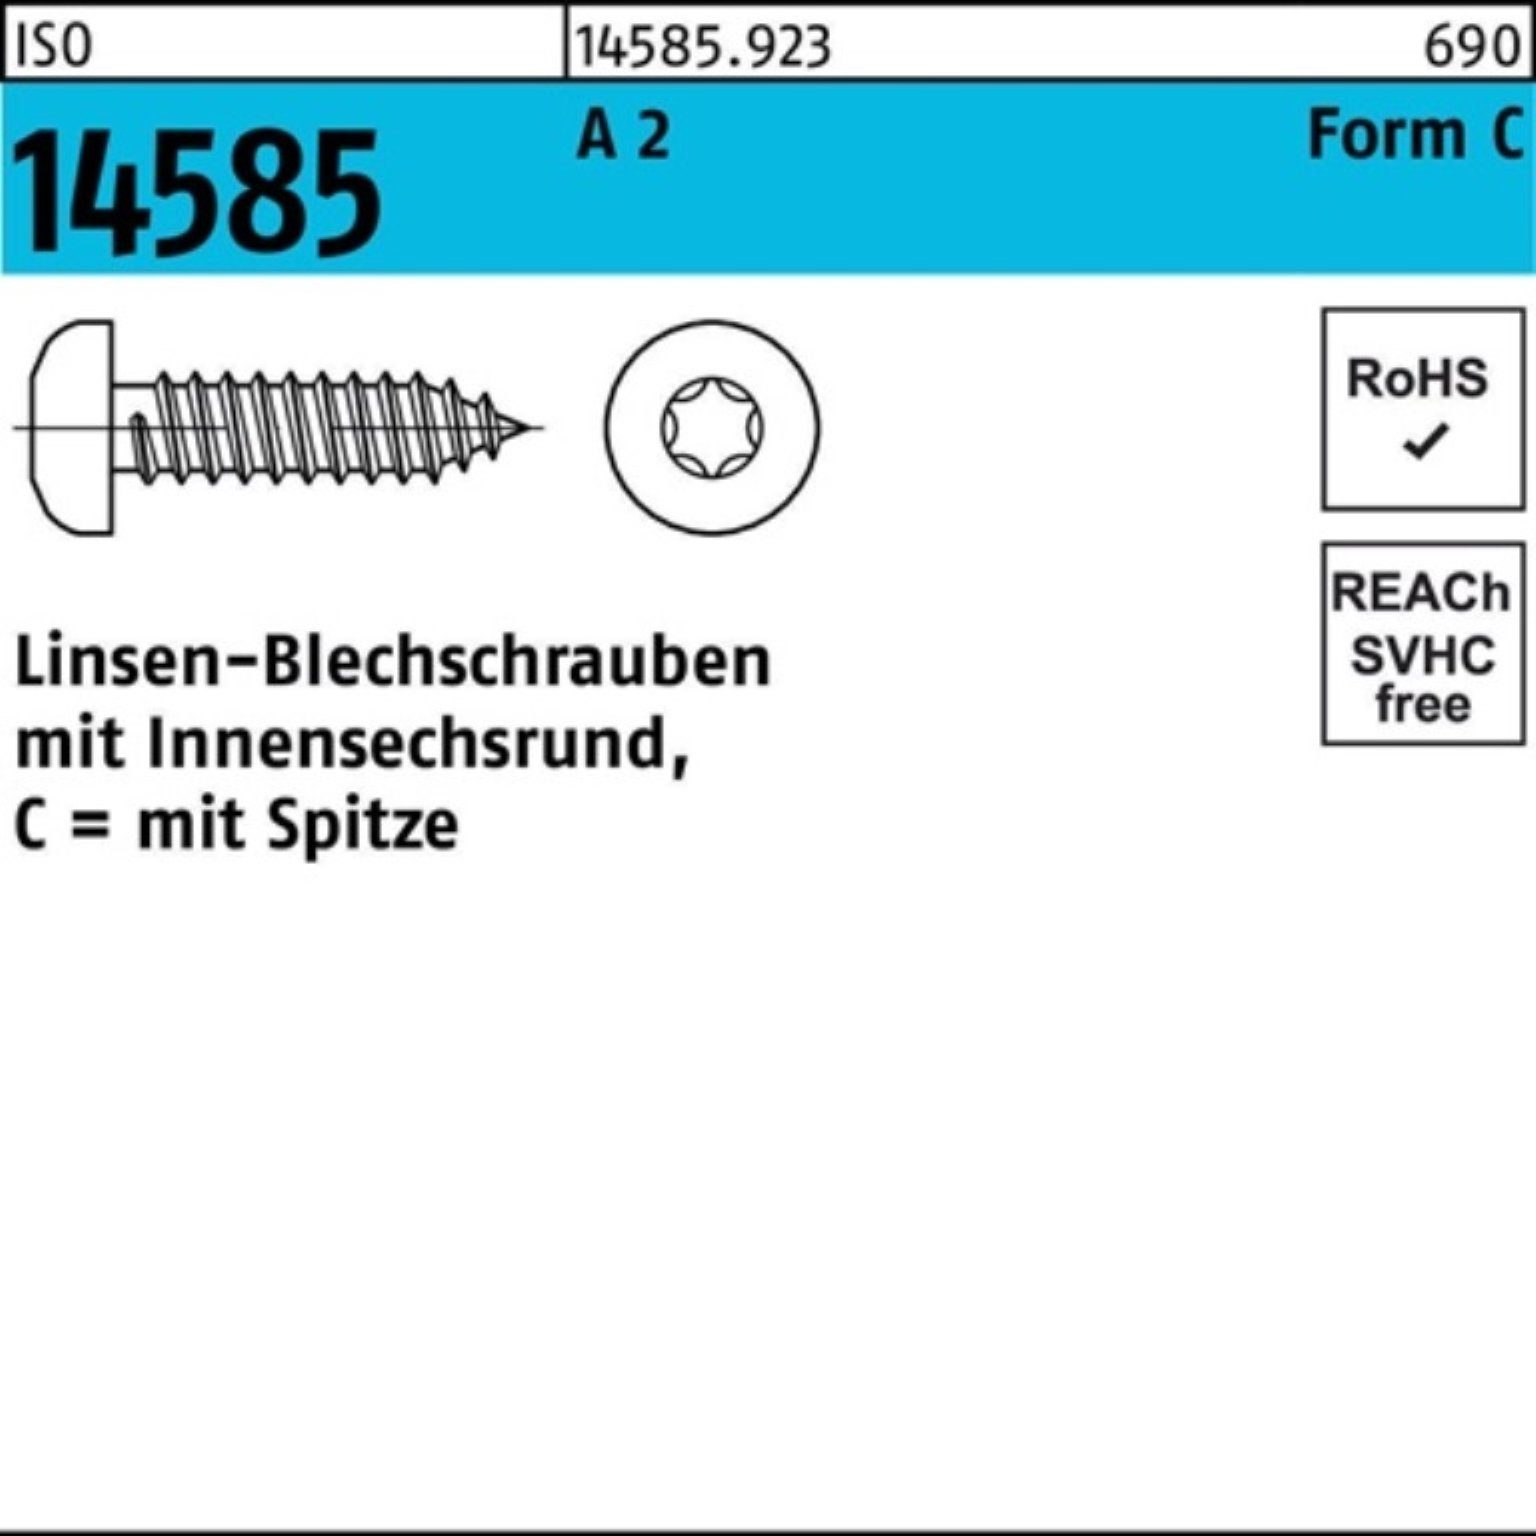 Reyher Blechschraube 250 2 A ISR St T25 ISO 55 Pack Linsenblechschraube -C 250er 4,8x 14585